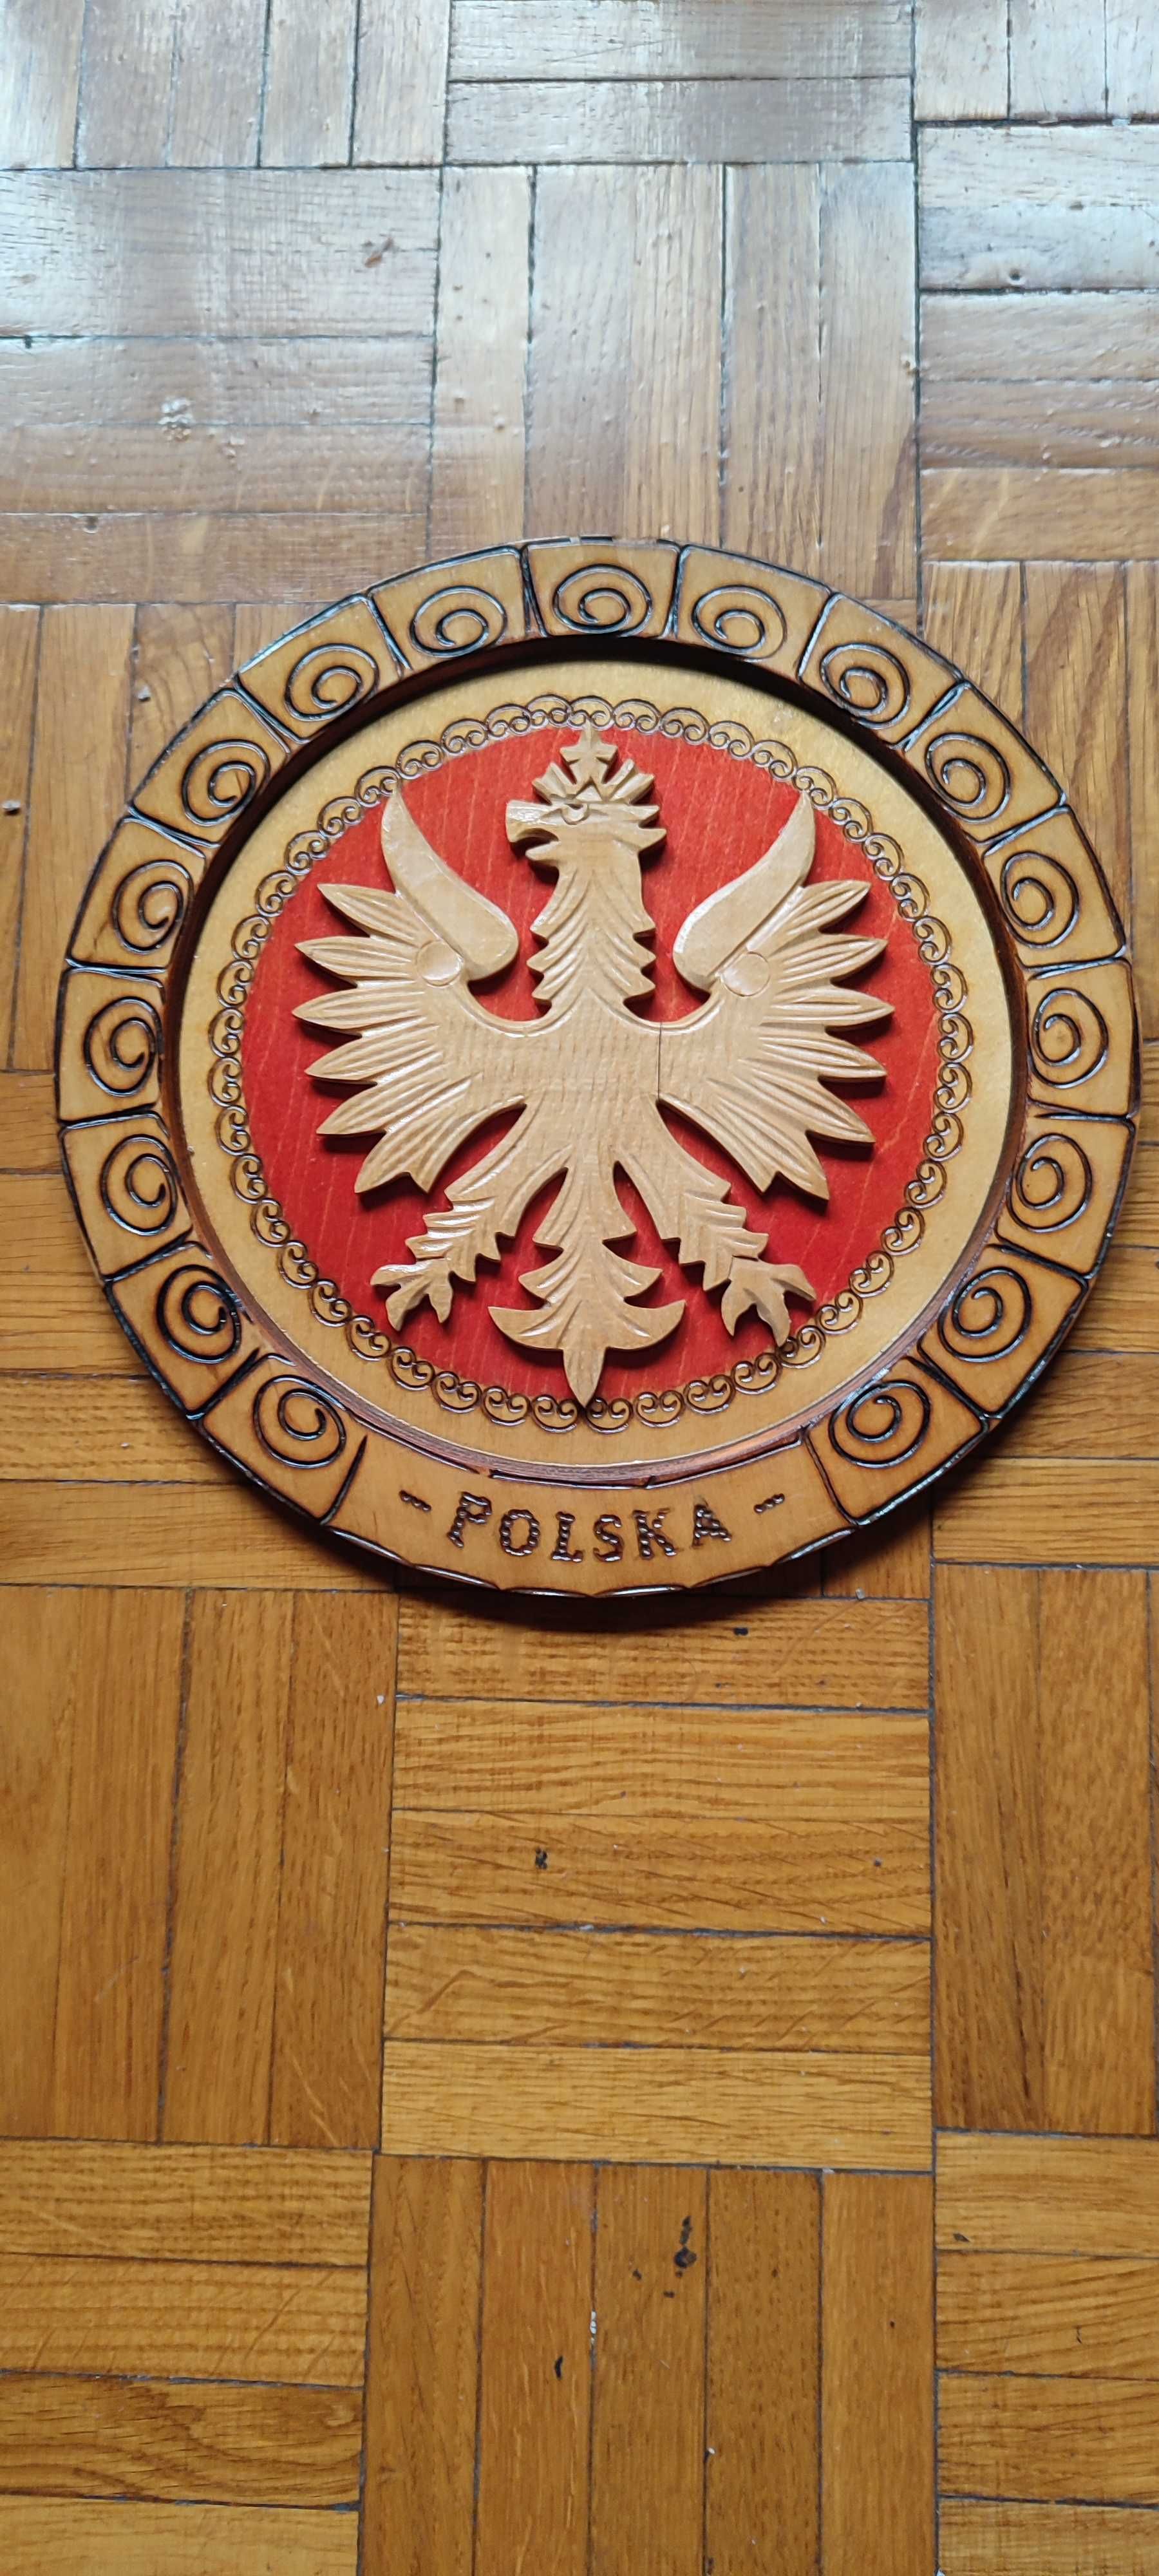 PROMOCJA Sprzedam ręcznie rzeźbiony talerz z godłem Polski